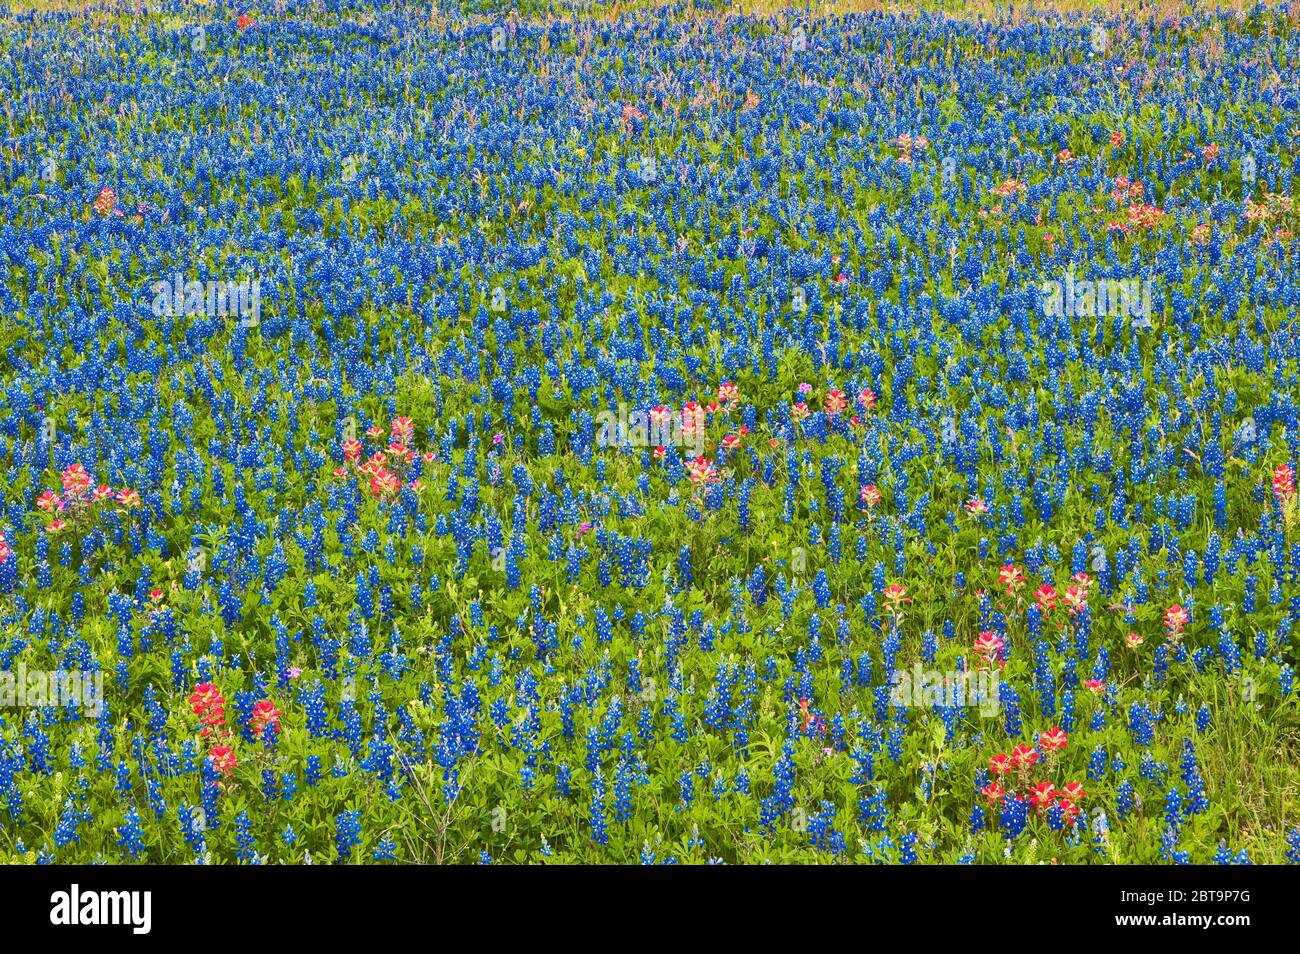 Champ de bluebonnets et fleurs sauvages de pinceaux indiens au bord de la route au printemps, près de Helena, Texas, États-Unis Banque D'Images